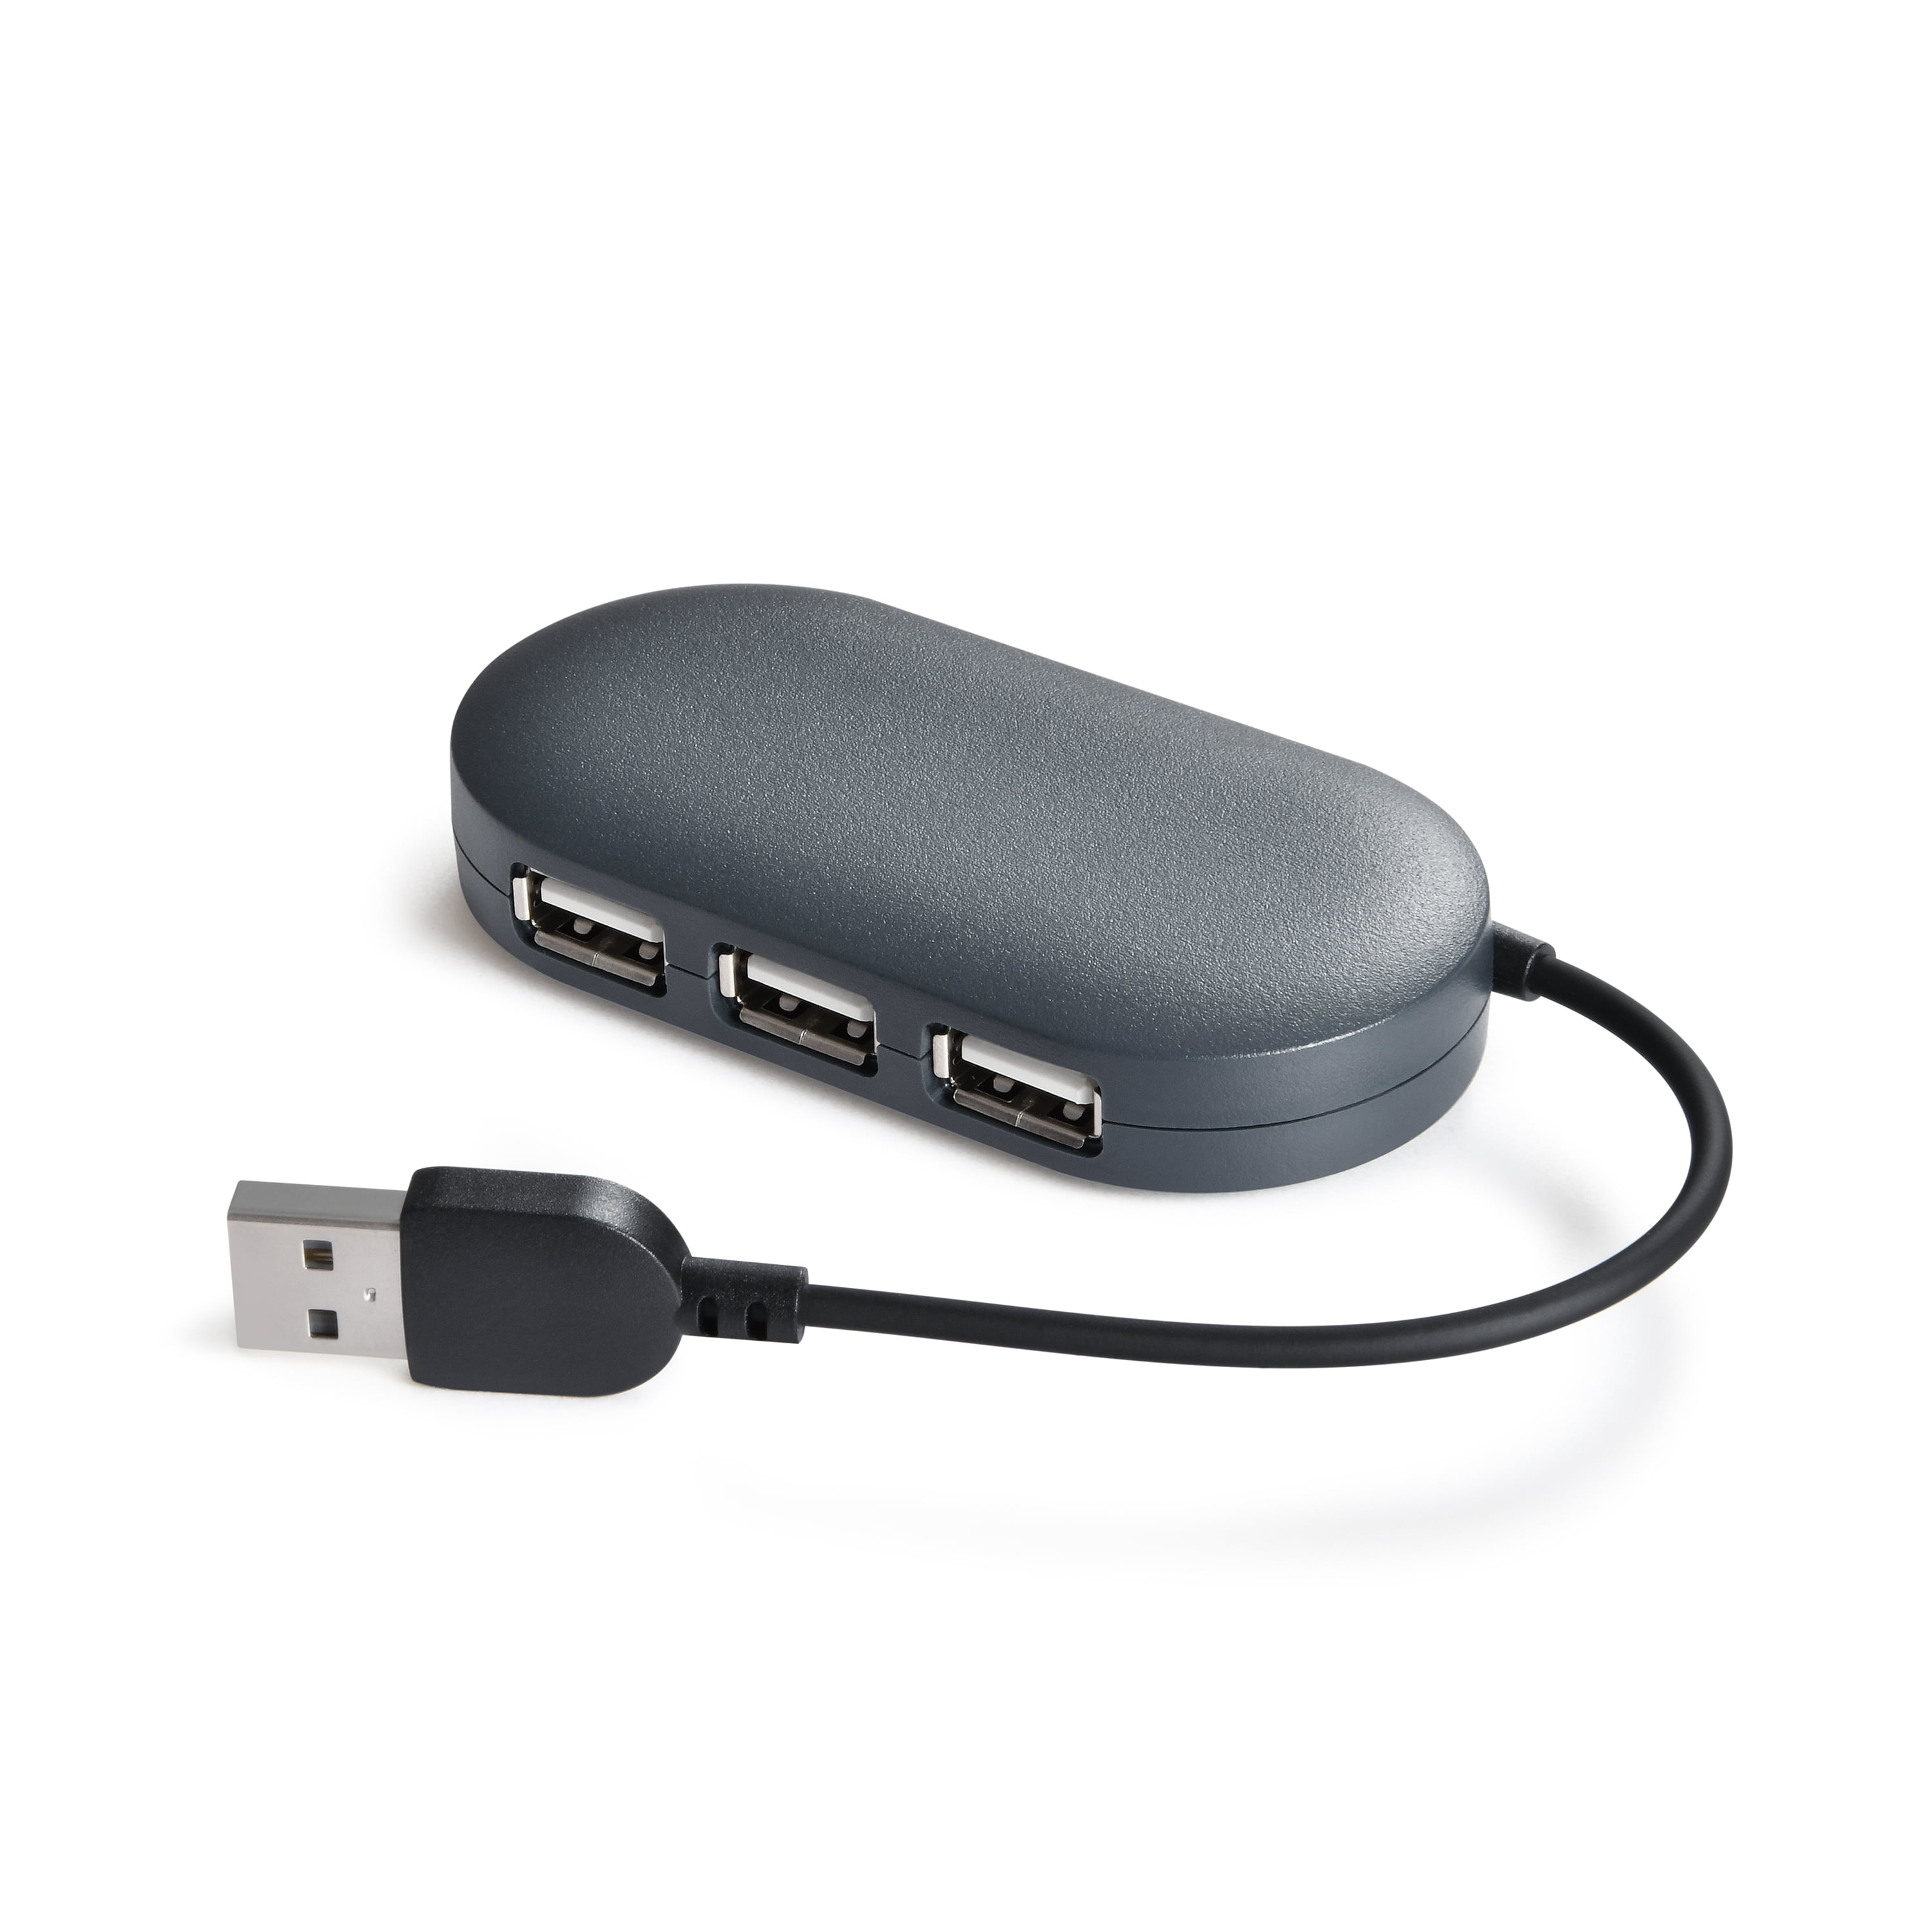 Kit 2 - 4 Port USB 3.0 Hub w/ Extra USB Cables